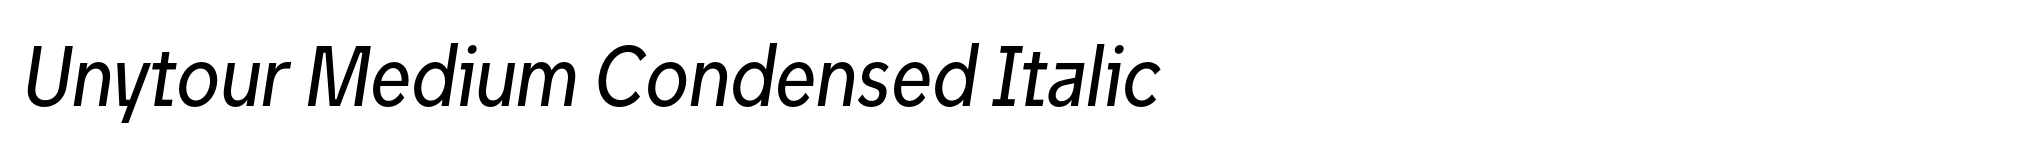 Unytour Medium Condensed Italic image